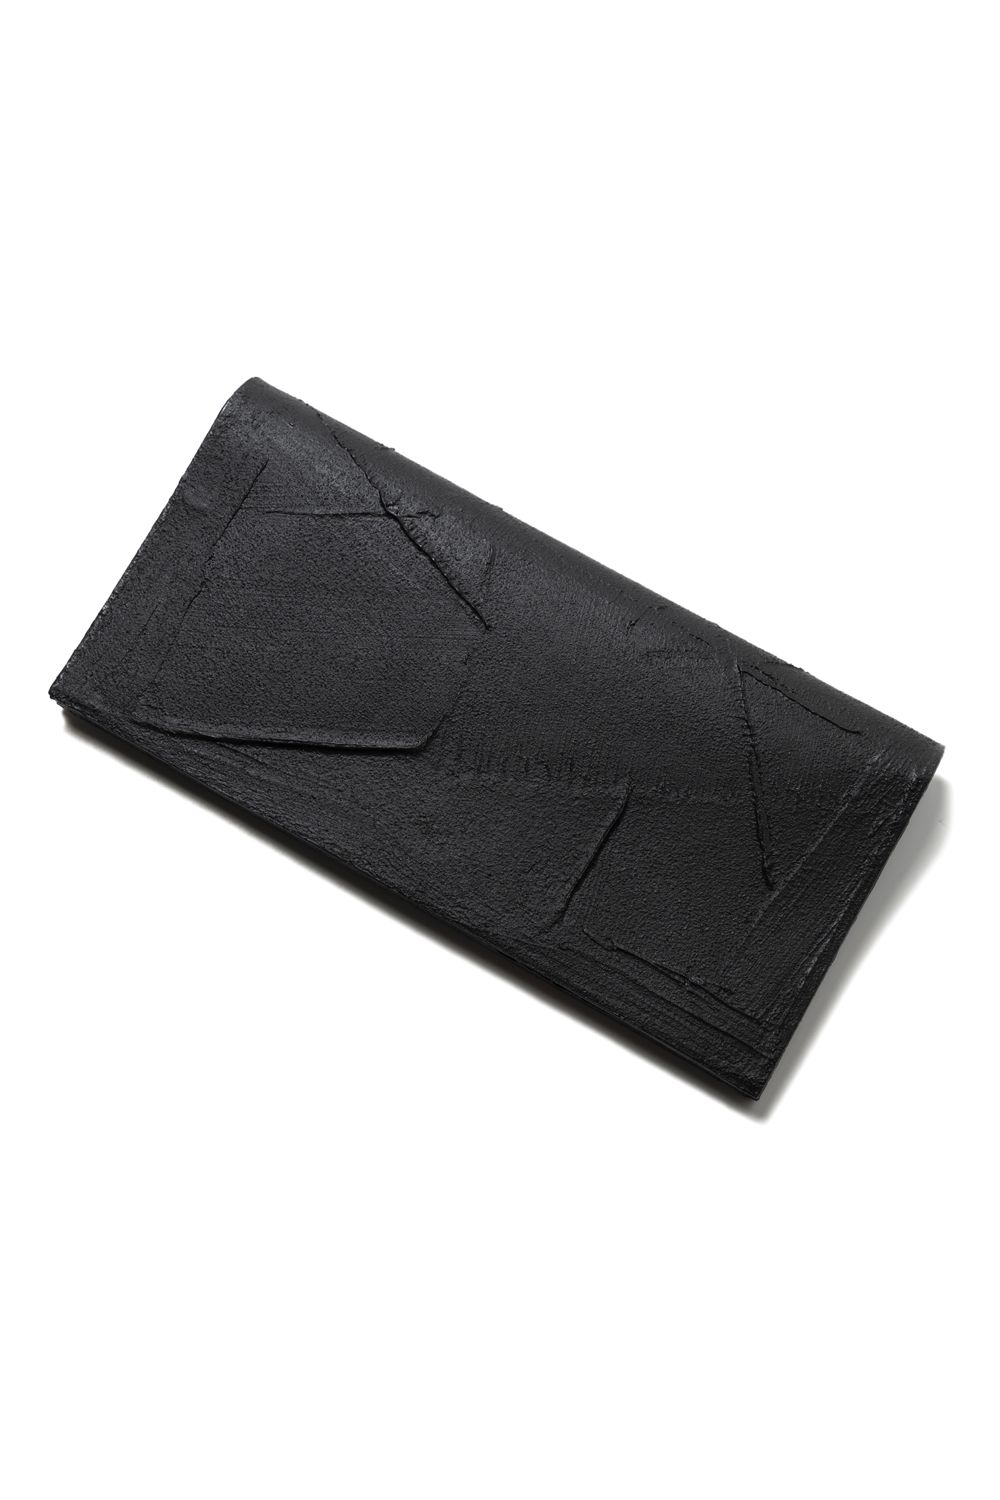 6,450円カガリユウスケ　薄型ブラック長財布